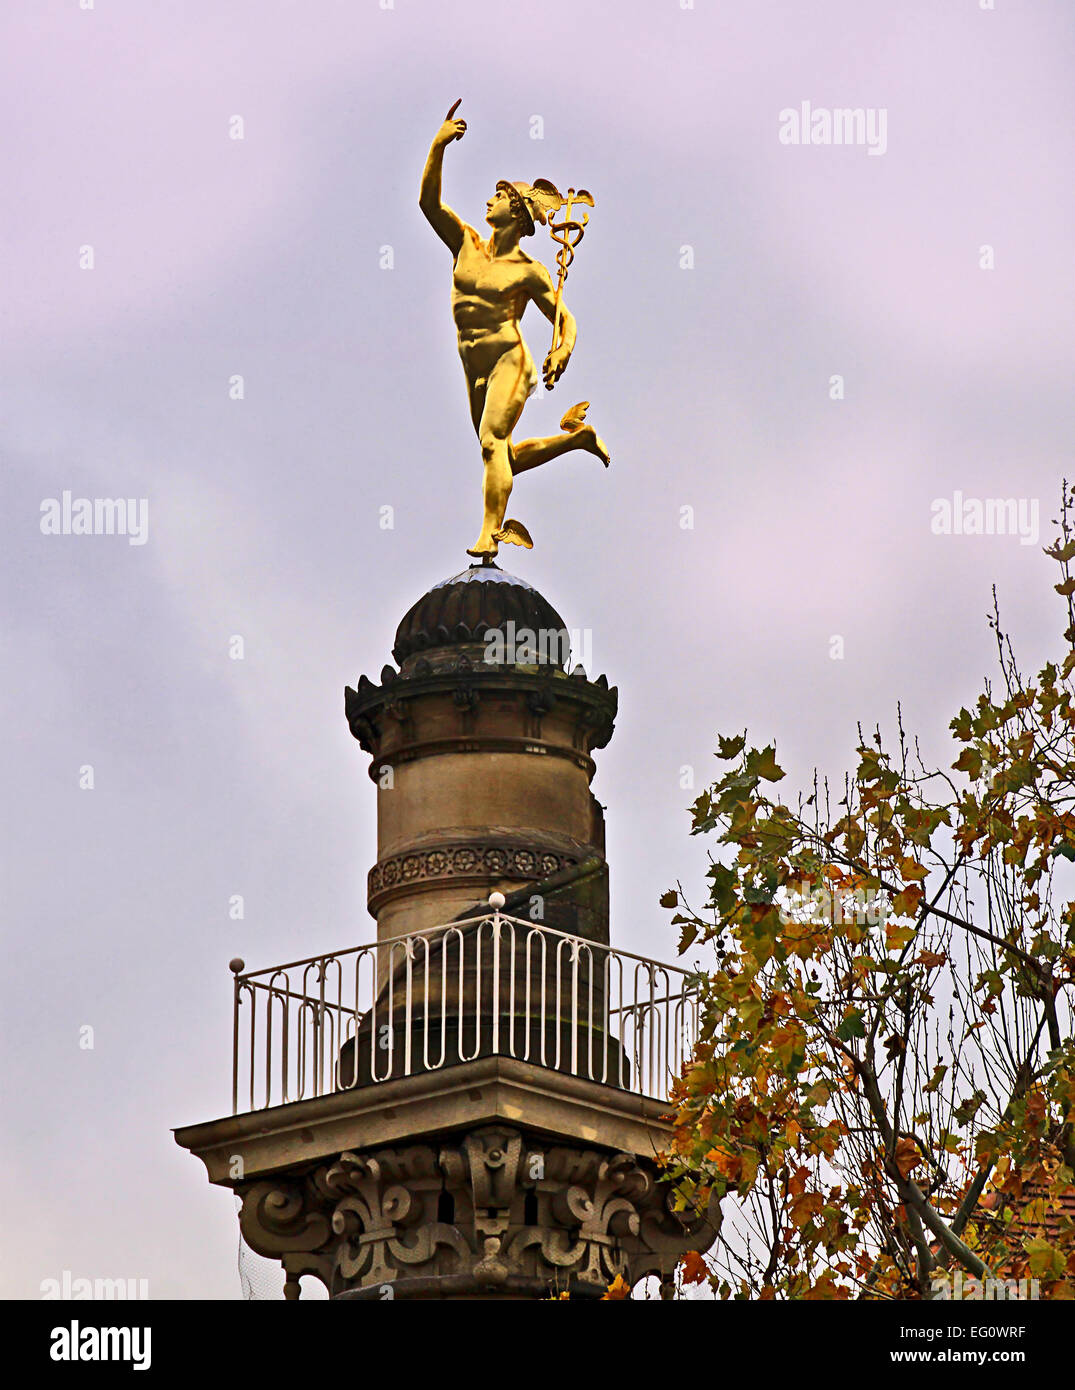 Stuttgart, Deutschland - goldene Hermes-Statue auf einer Säule in der Nähe  von Schlossplatz Stockfotografie - Alamy